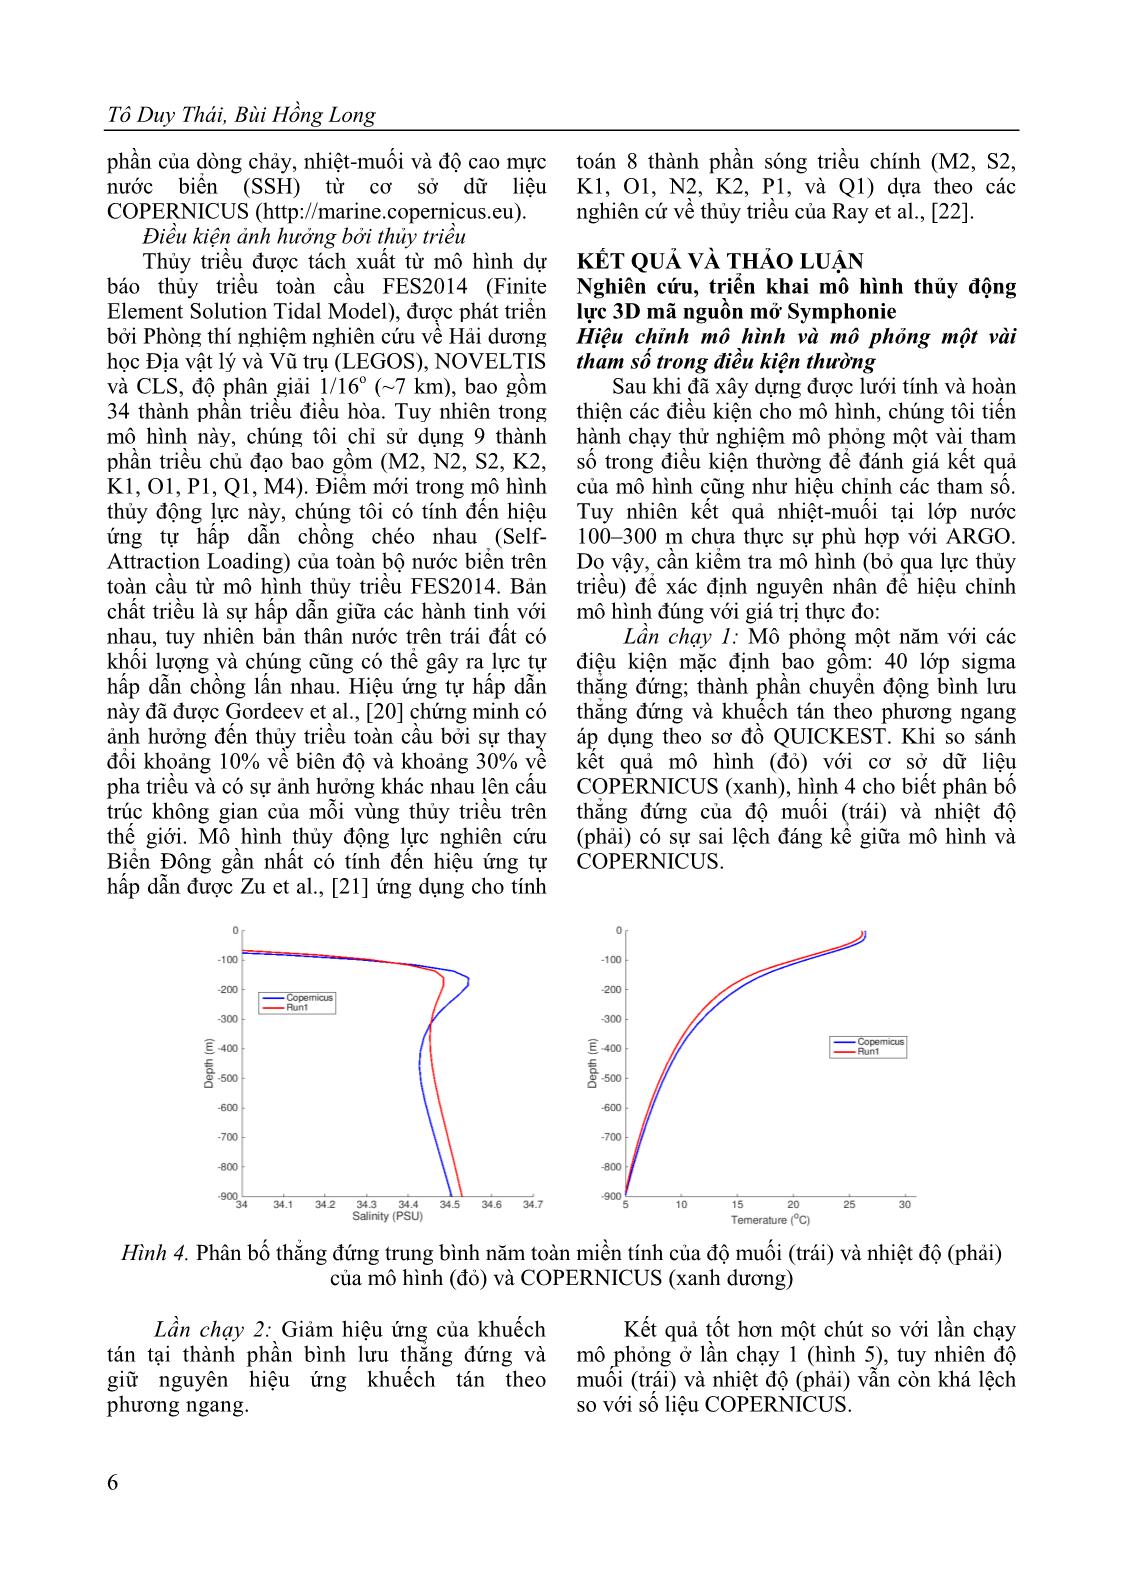 Nghiên cứu, ứng dụng mô hình Symphonie tính toán các quá trình thủy động lực trên Biển Đông trang 6